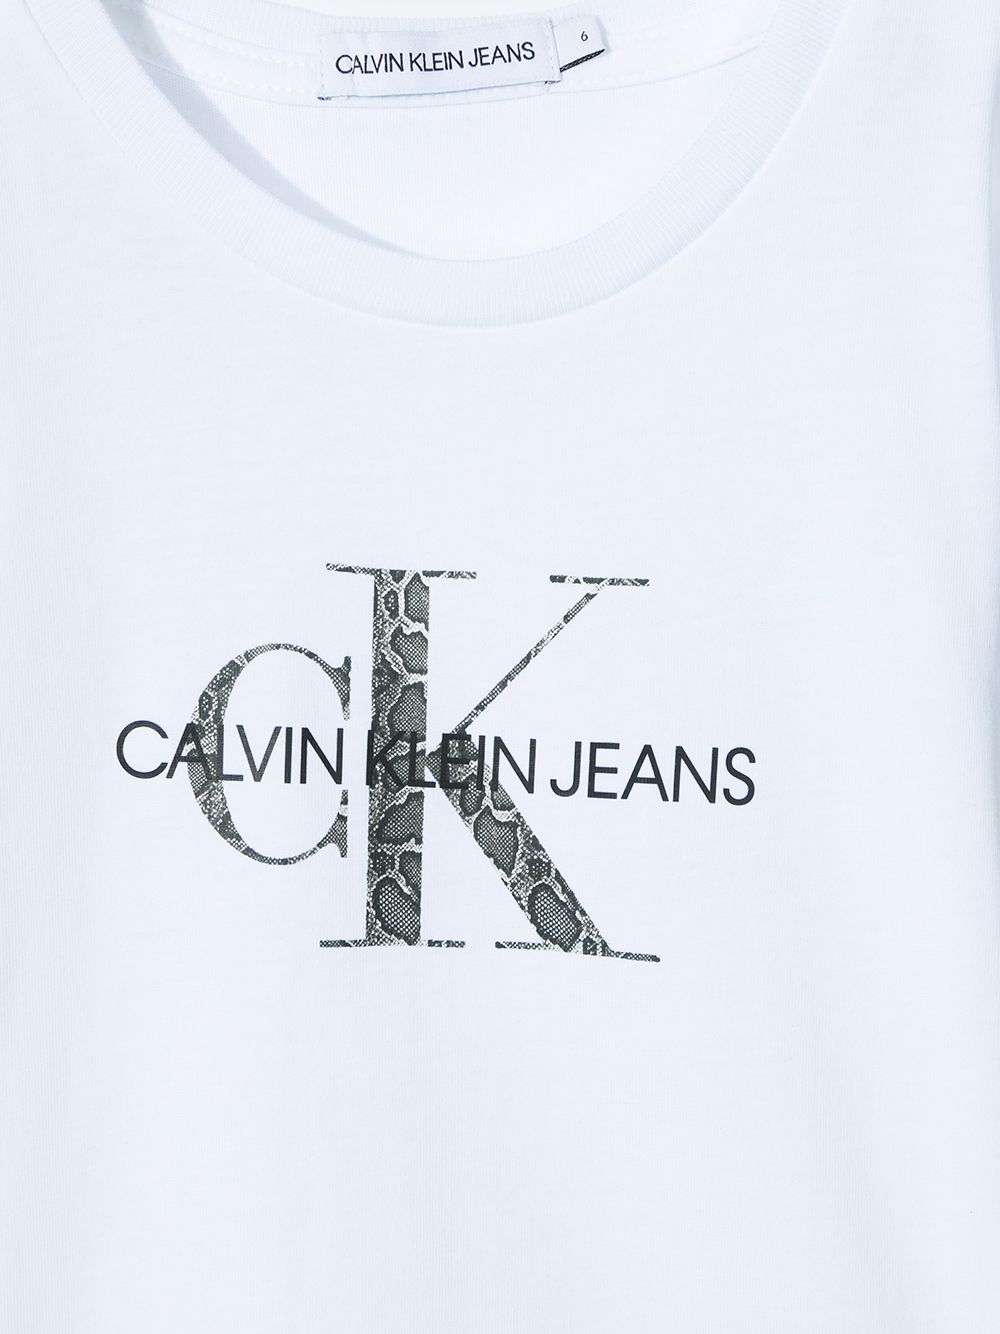 фото Calvin klein kids футболка с логотипом